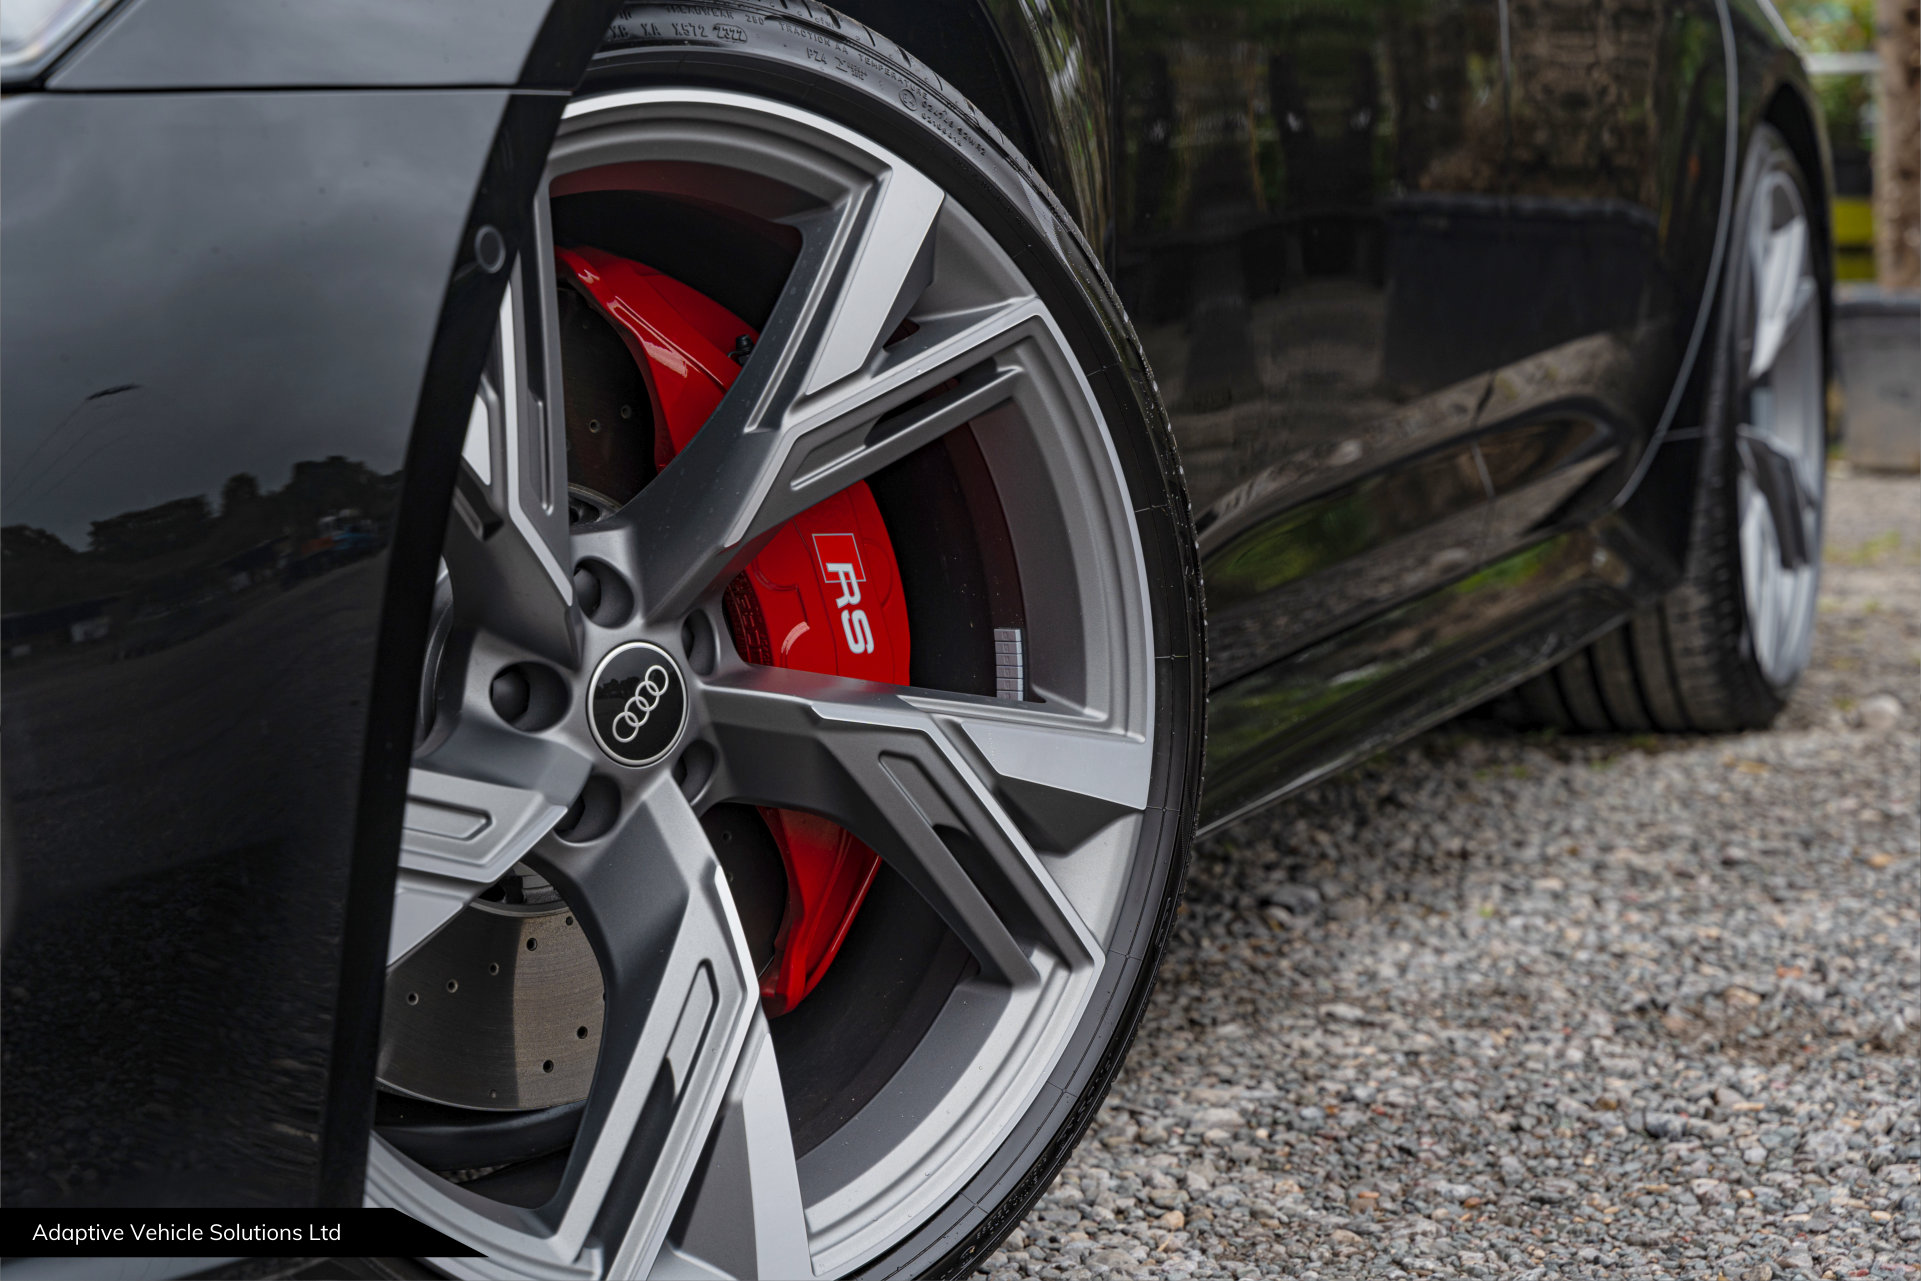 Audi RS6 Vorsprung Mythos Black near side red caliper